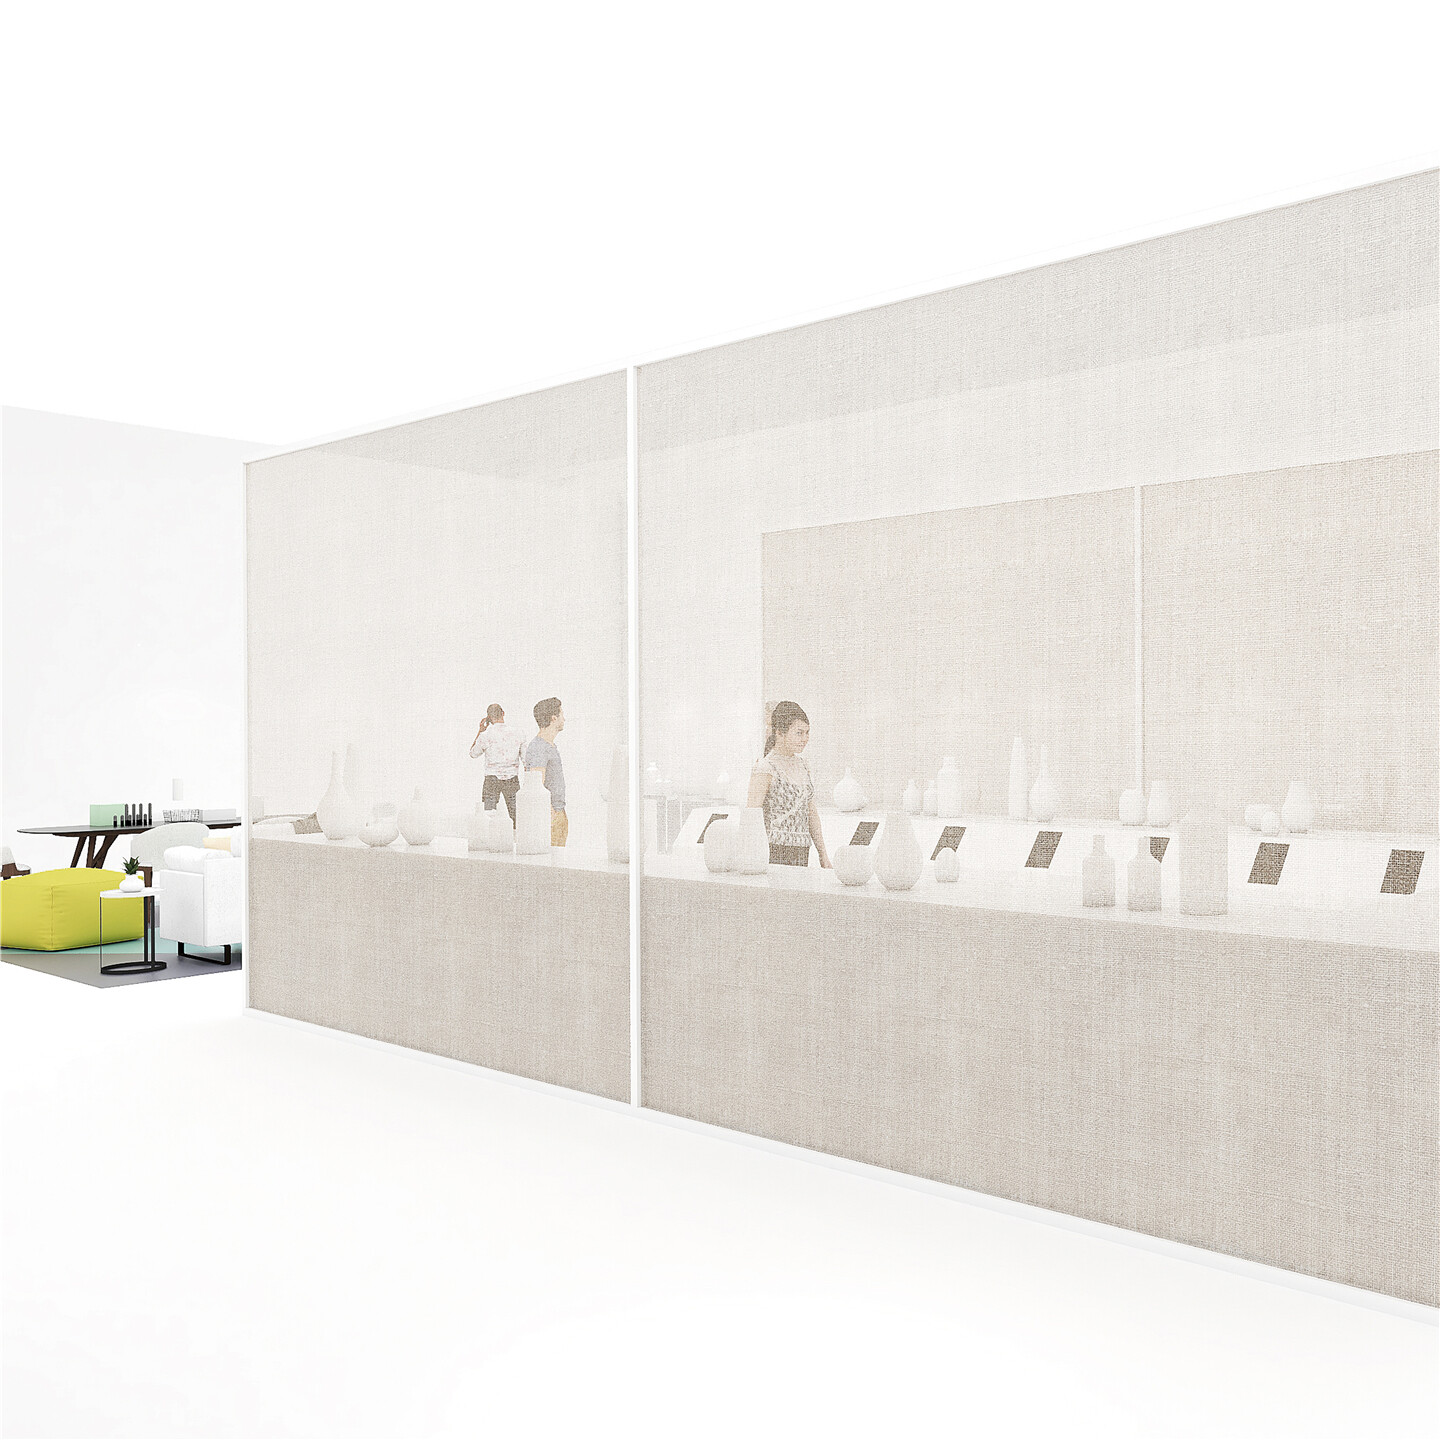 展厅空间设计-景德镇陶瓷展展厅空间设计